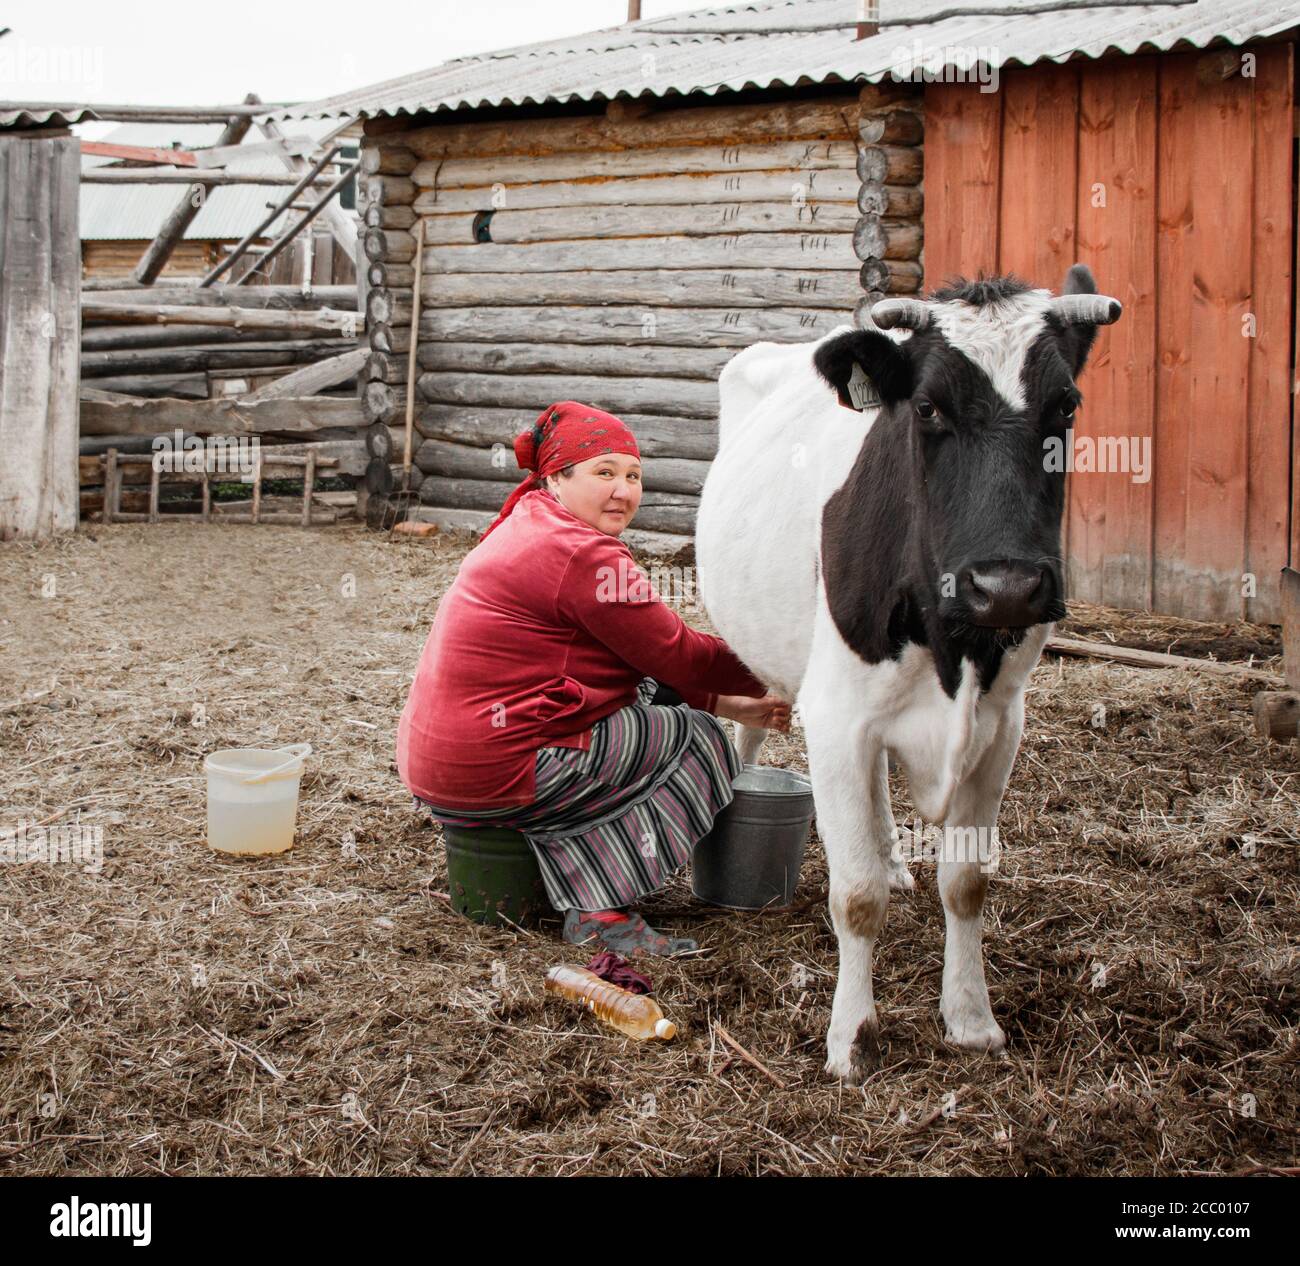 Eine Frau in einer roten Kopftuchhand melkt eine Kuh auf einem Bauernhof in einem sibirischen Dorf, Russland Stockfoto